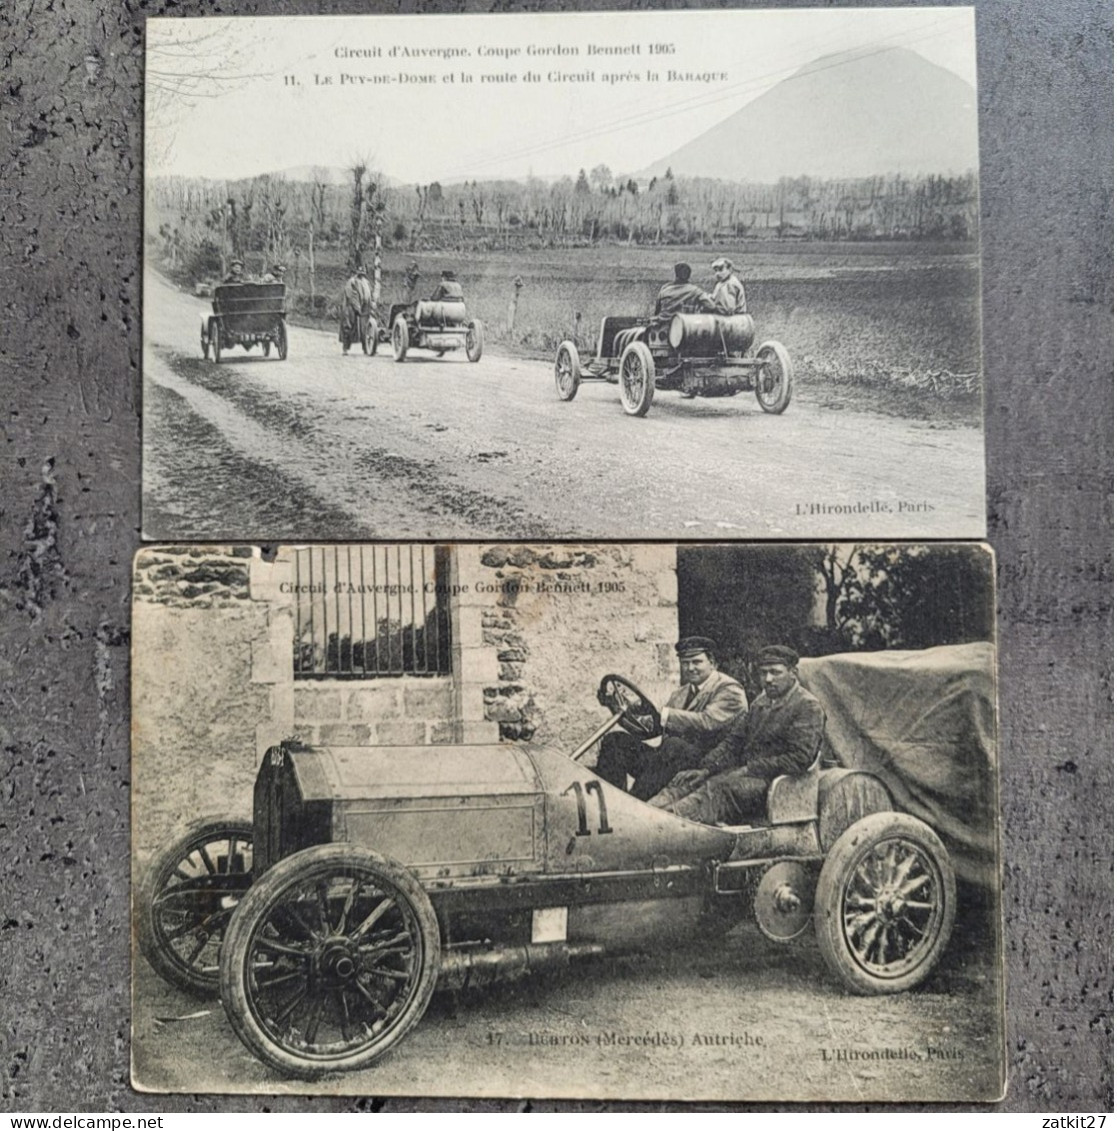 Cartes Postales, Coupe Gordon Bennett 1905, Course Automobile - Auvergne Types D'Auvergne